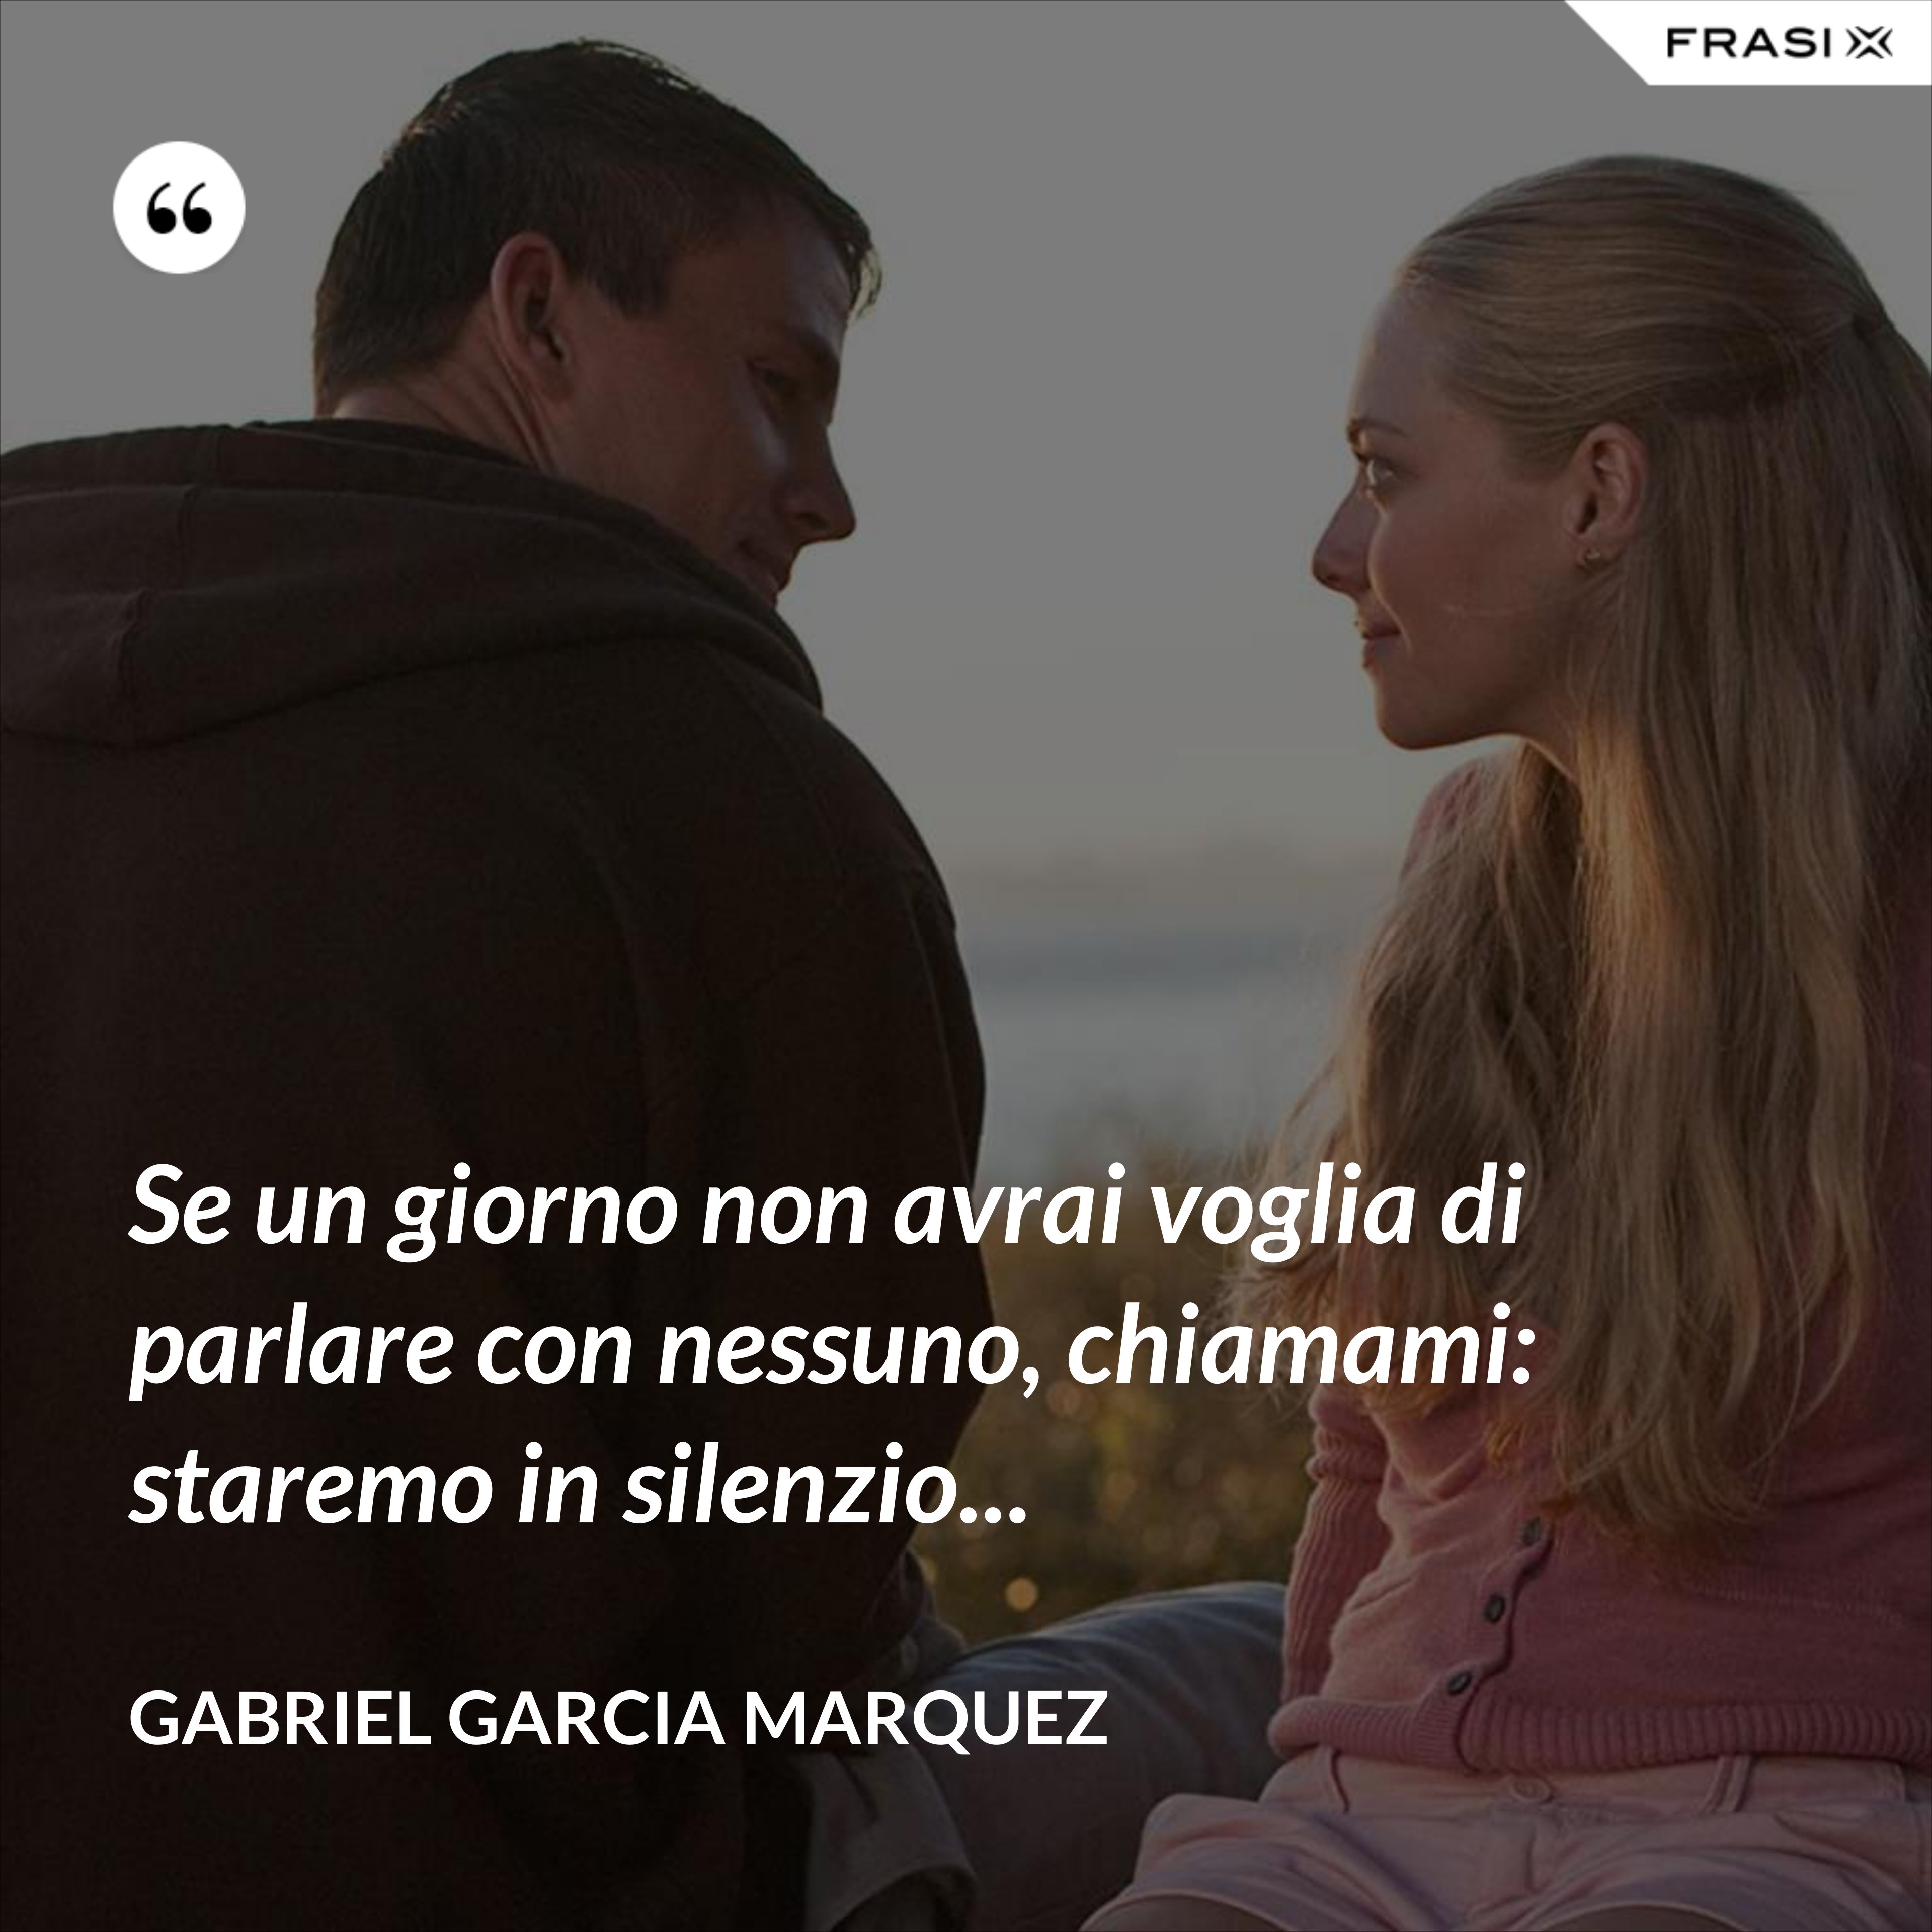 Se un giorno non avrai voglia di parlare con nessuno, chiamami: staremo in silenzio... - Gabriel Garcia Marquez